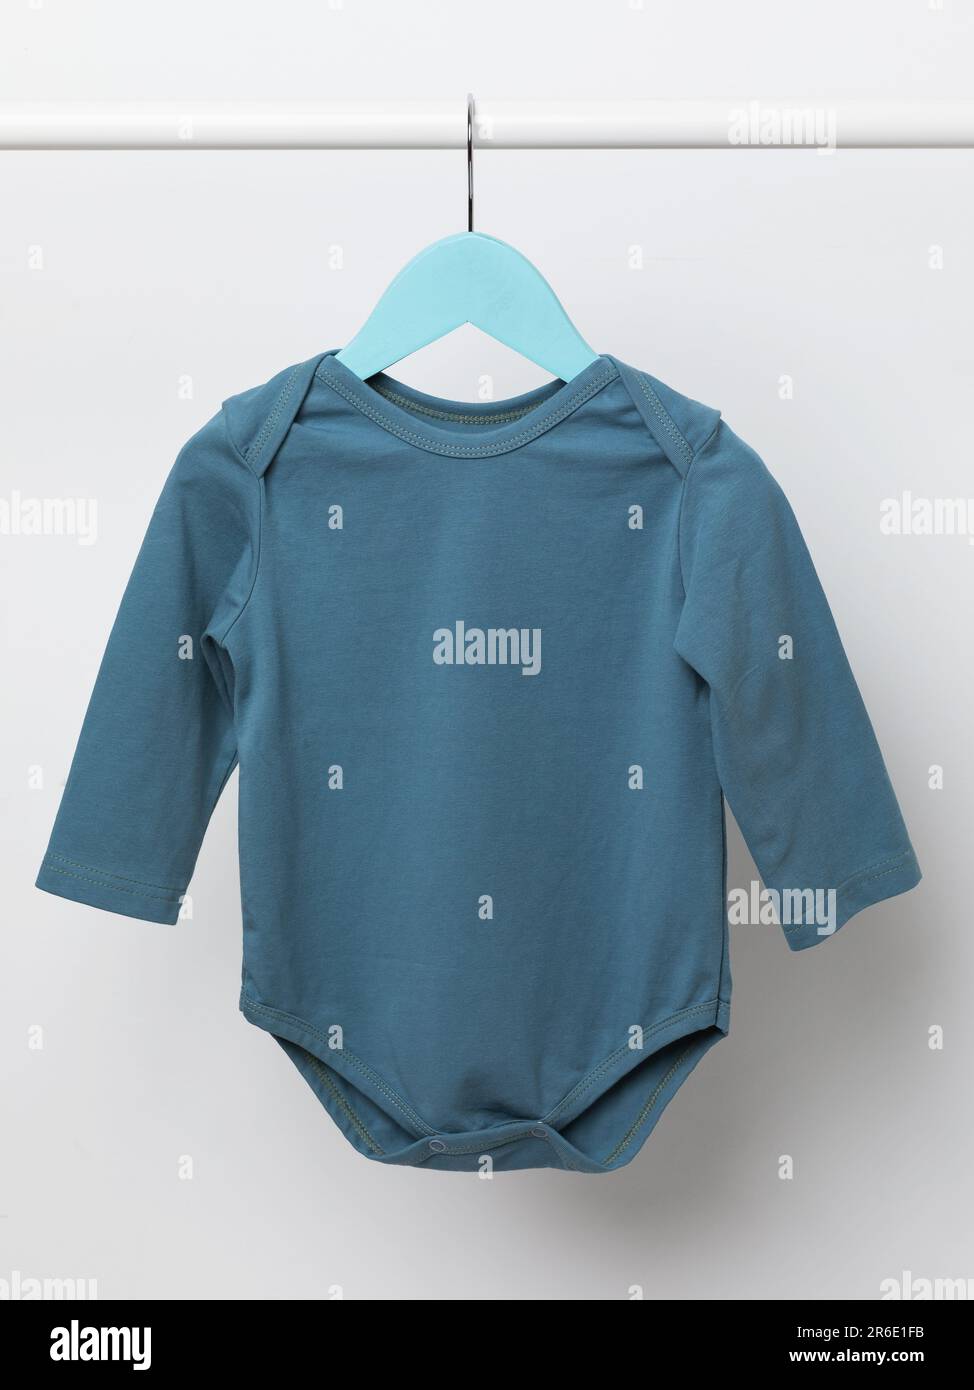 Ein blauer langärmeliger Babyanzug hängt auf einem hellen Hintergrund an einem Kleiderbügel Stockfoto